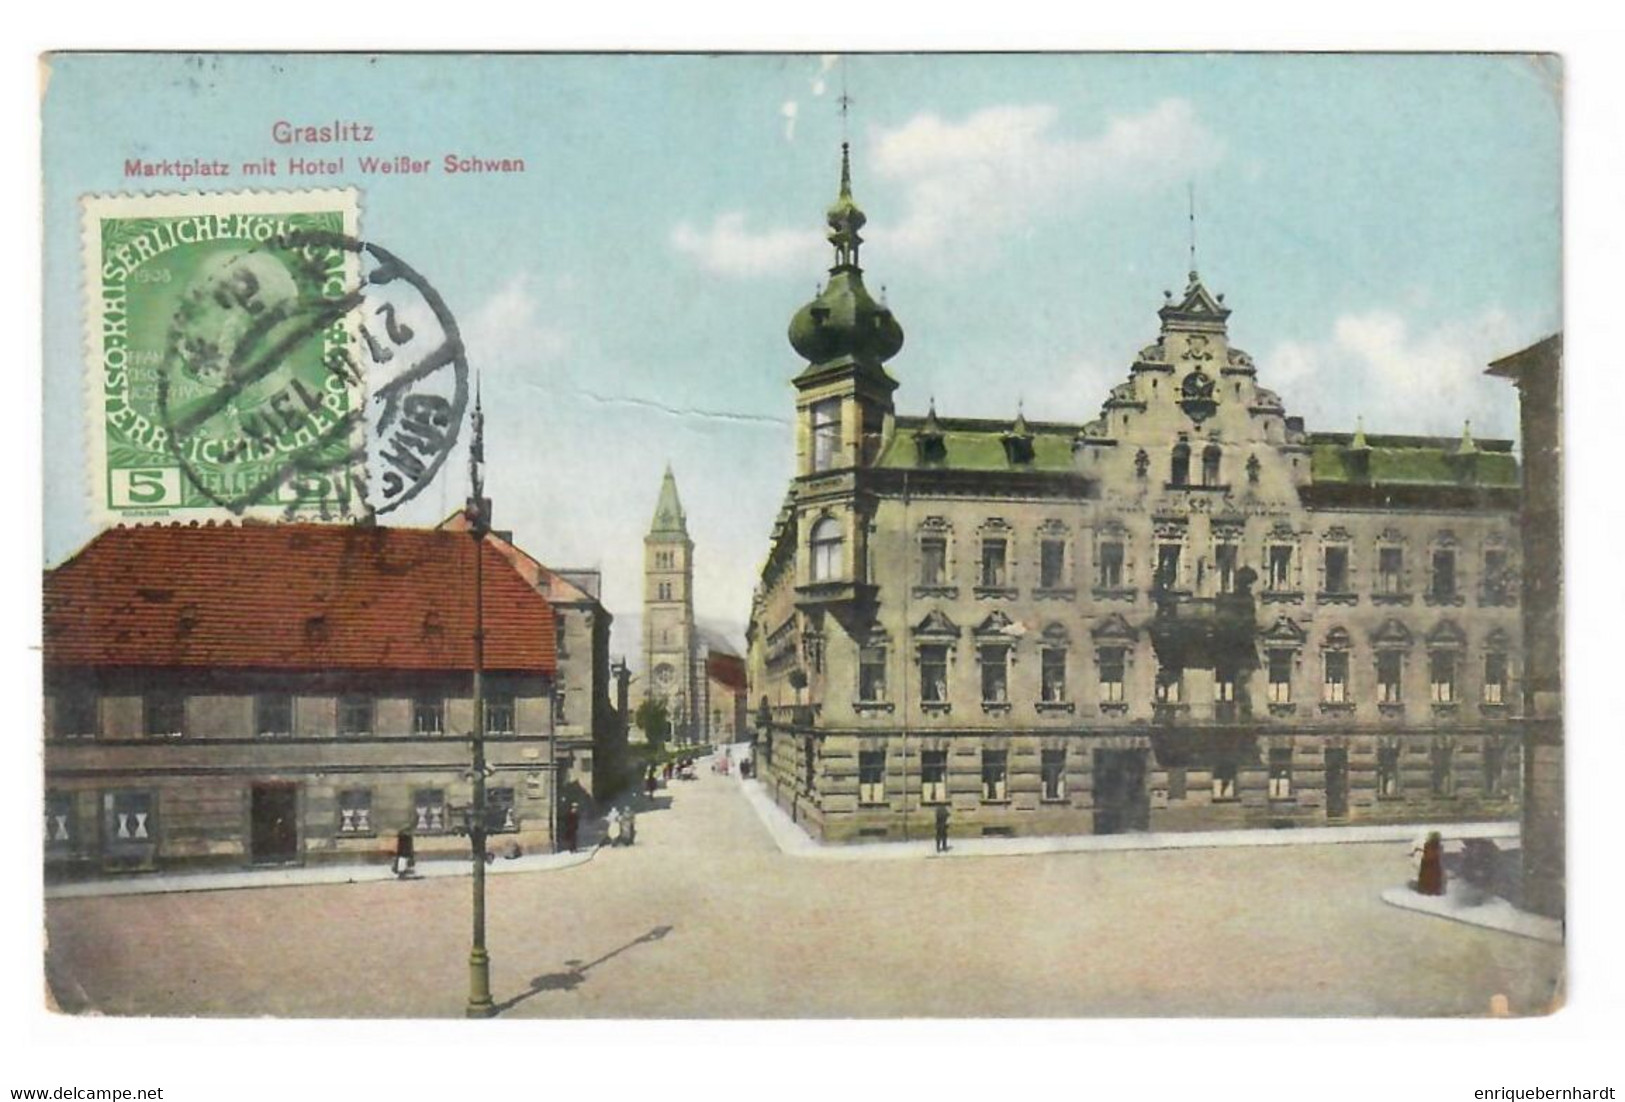 KRASLICE (REPUBLICA CHECA) ♦ MARKTPLATZ MIT HOTEL WEISSER SCHWAN ♦ CIRCULADA EN 1913 - República Checa